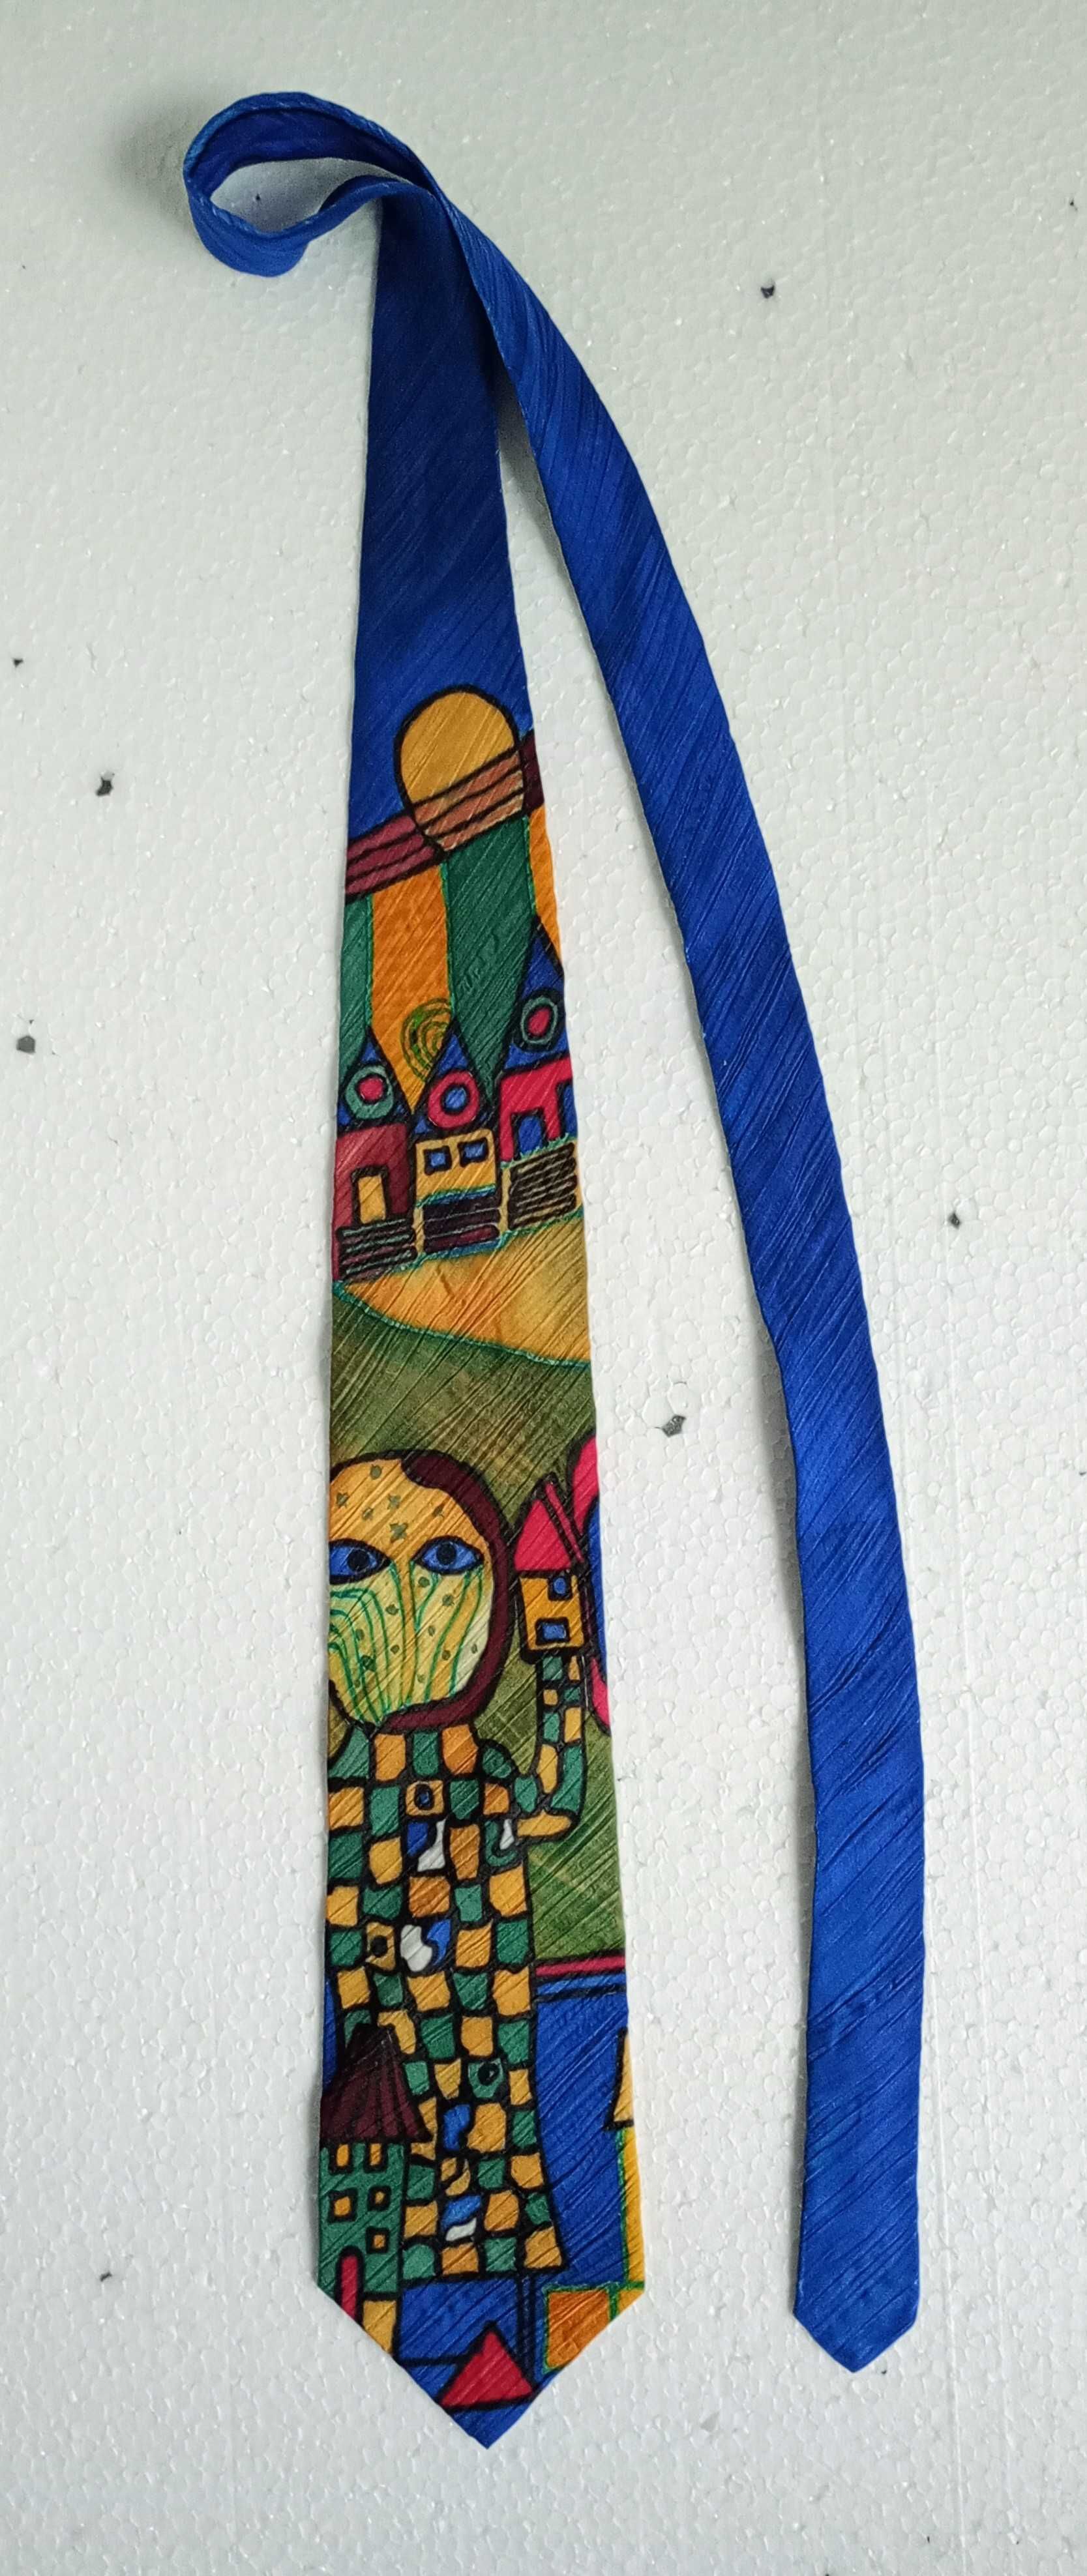 Niespotykany krawat jedwabny a'la Klimt lub Picasso